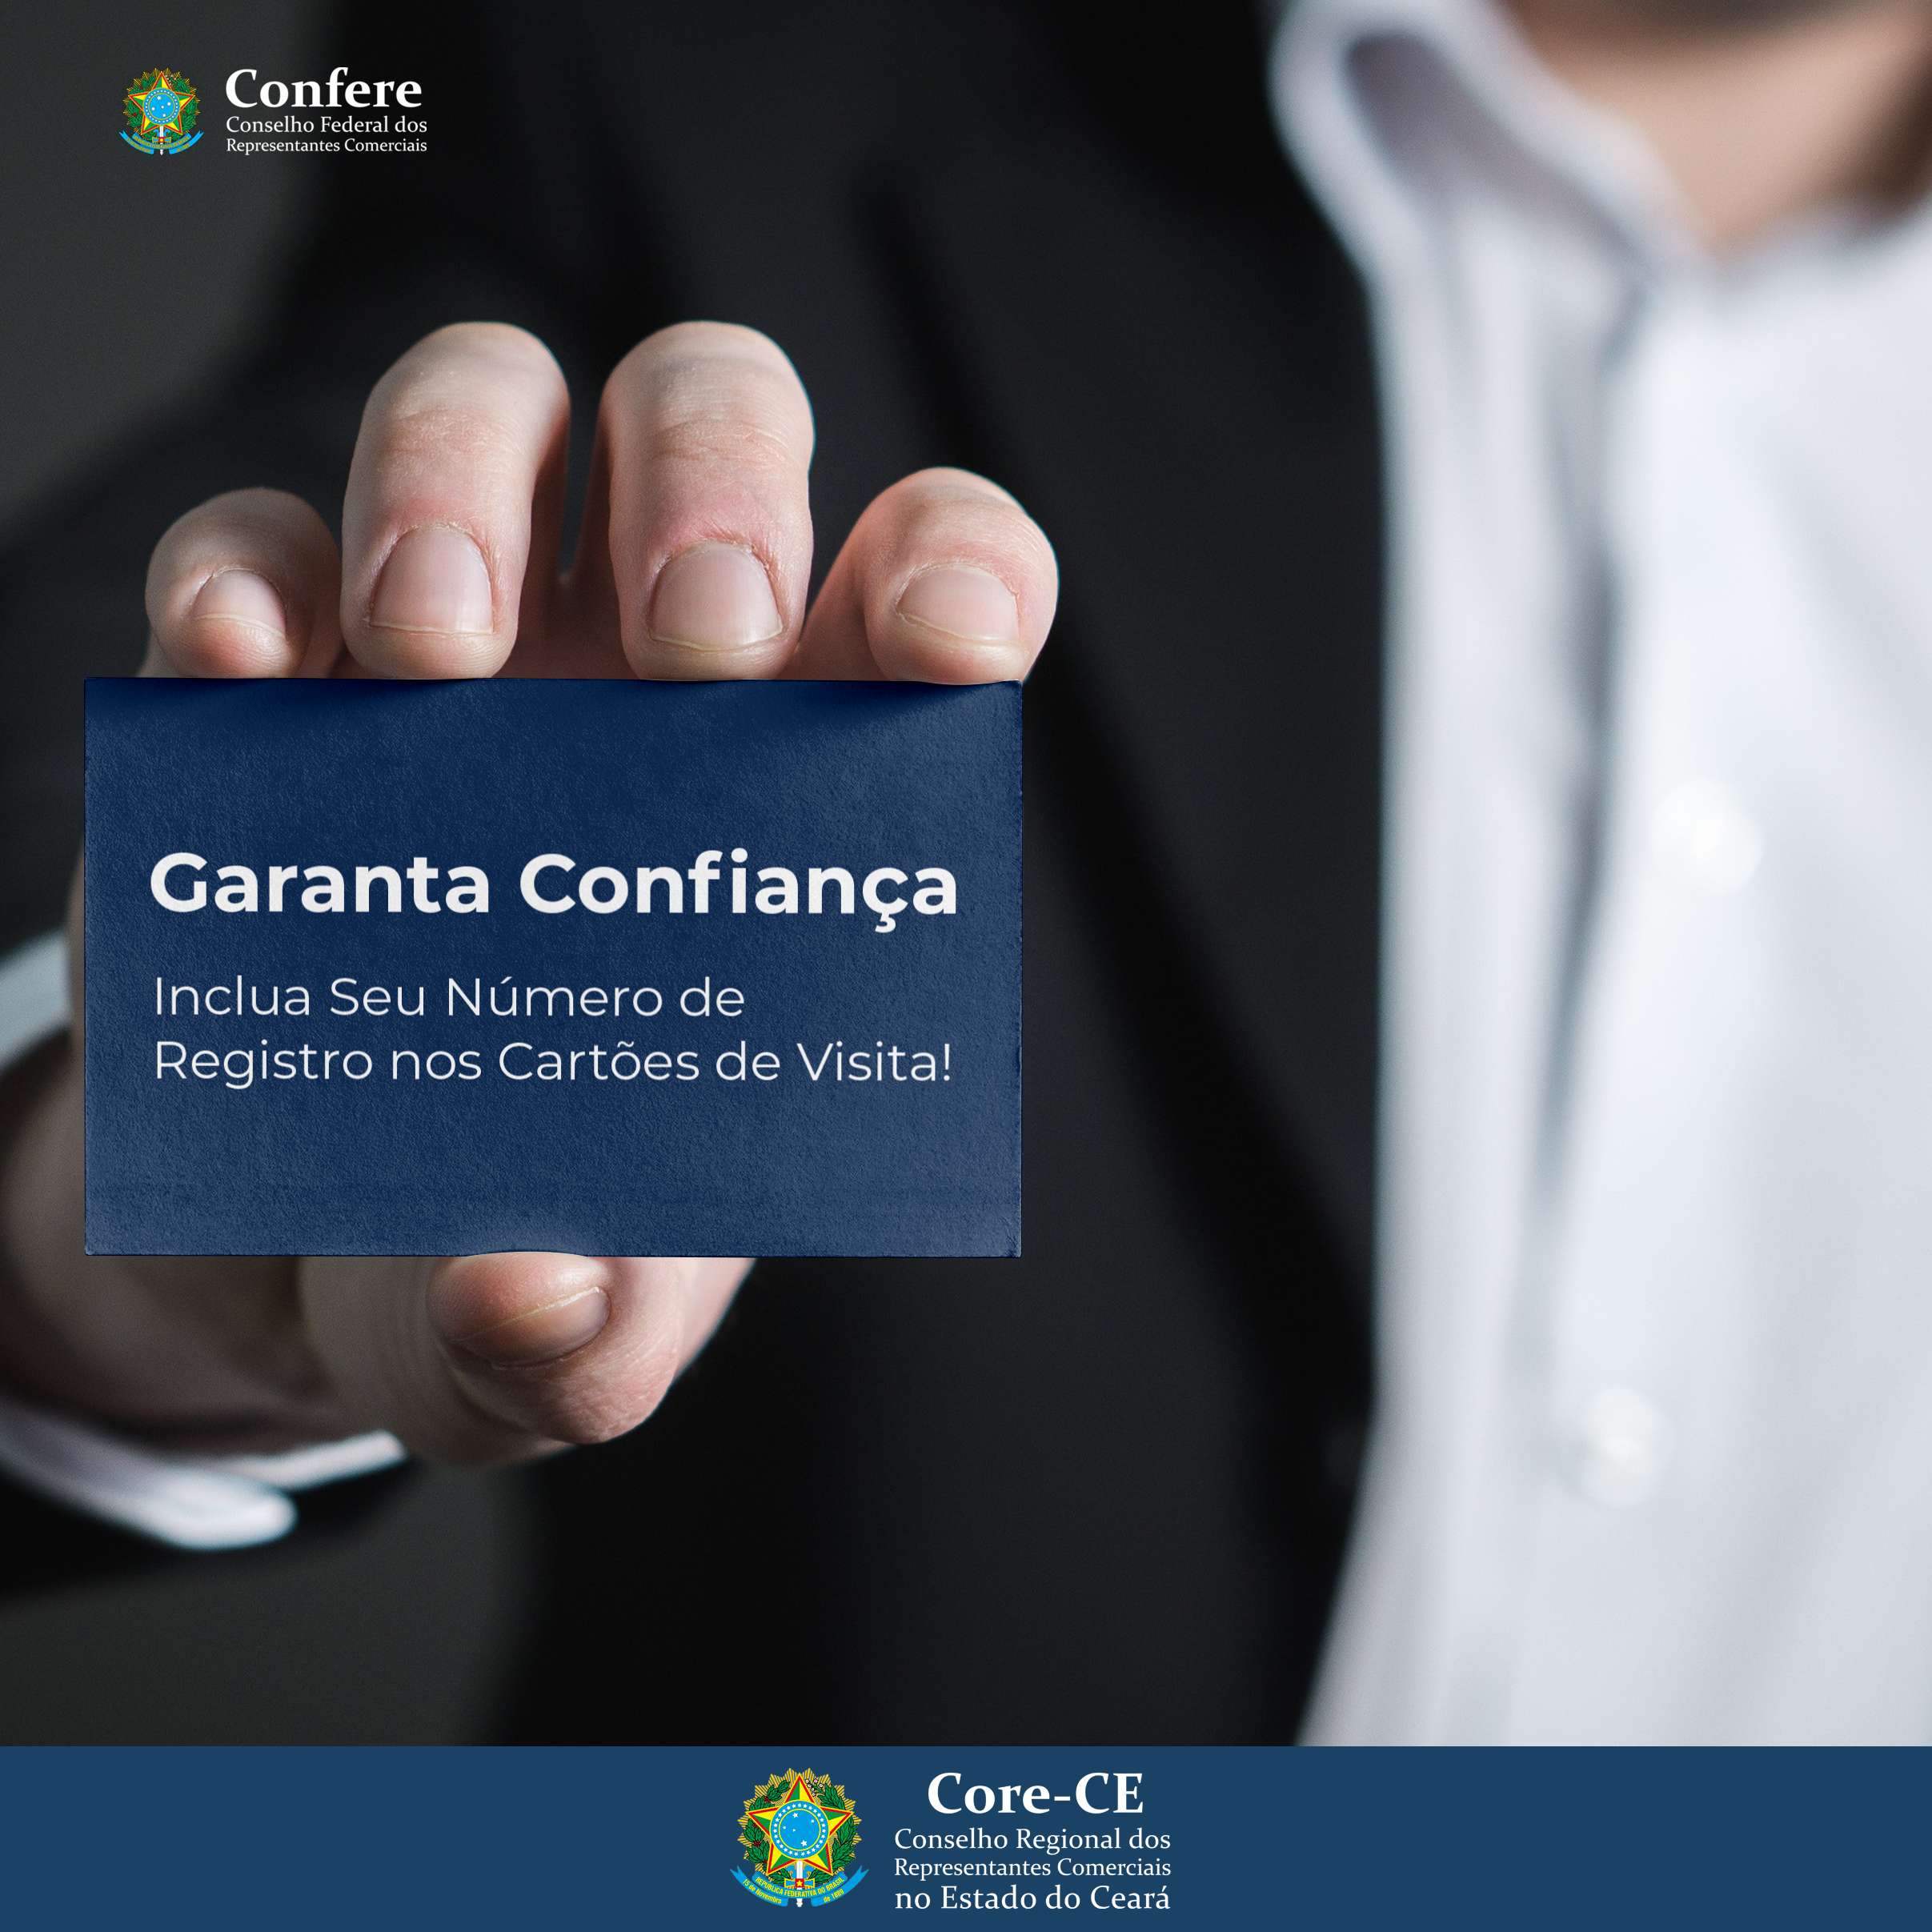 Sistema Confere/Cores adere campanha em prol da valorização do número de registro em cartão de visita